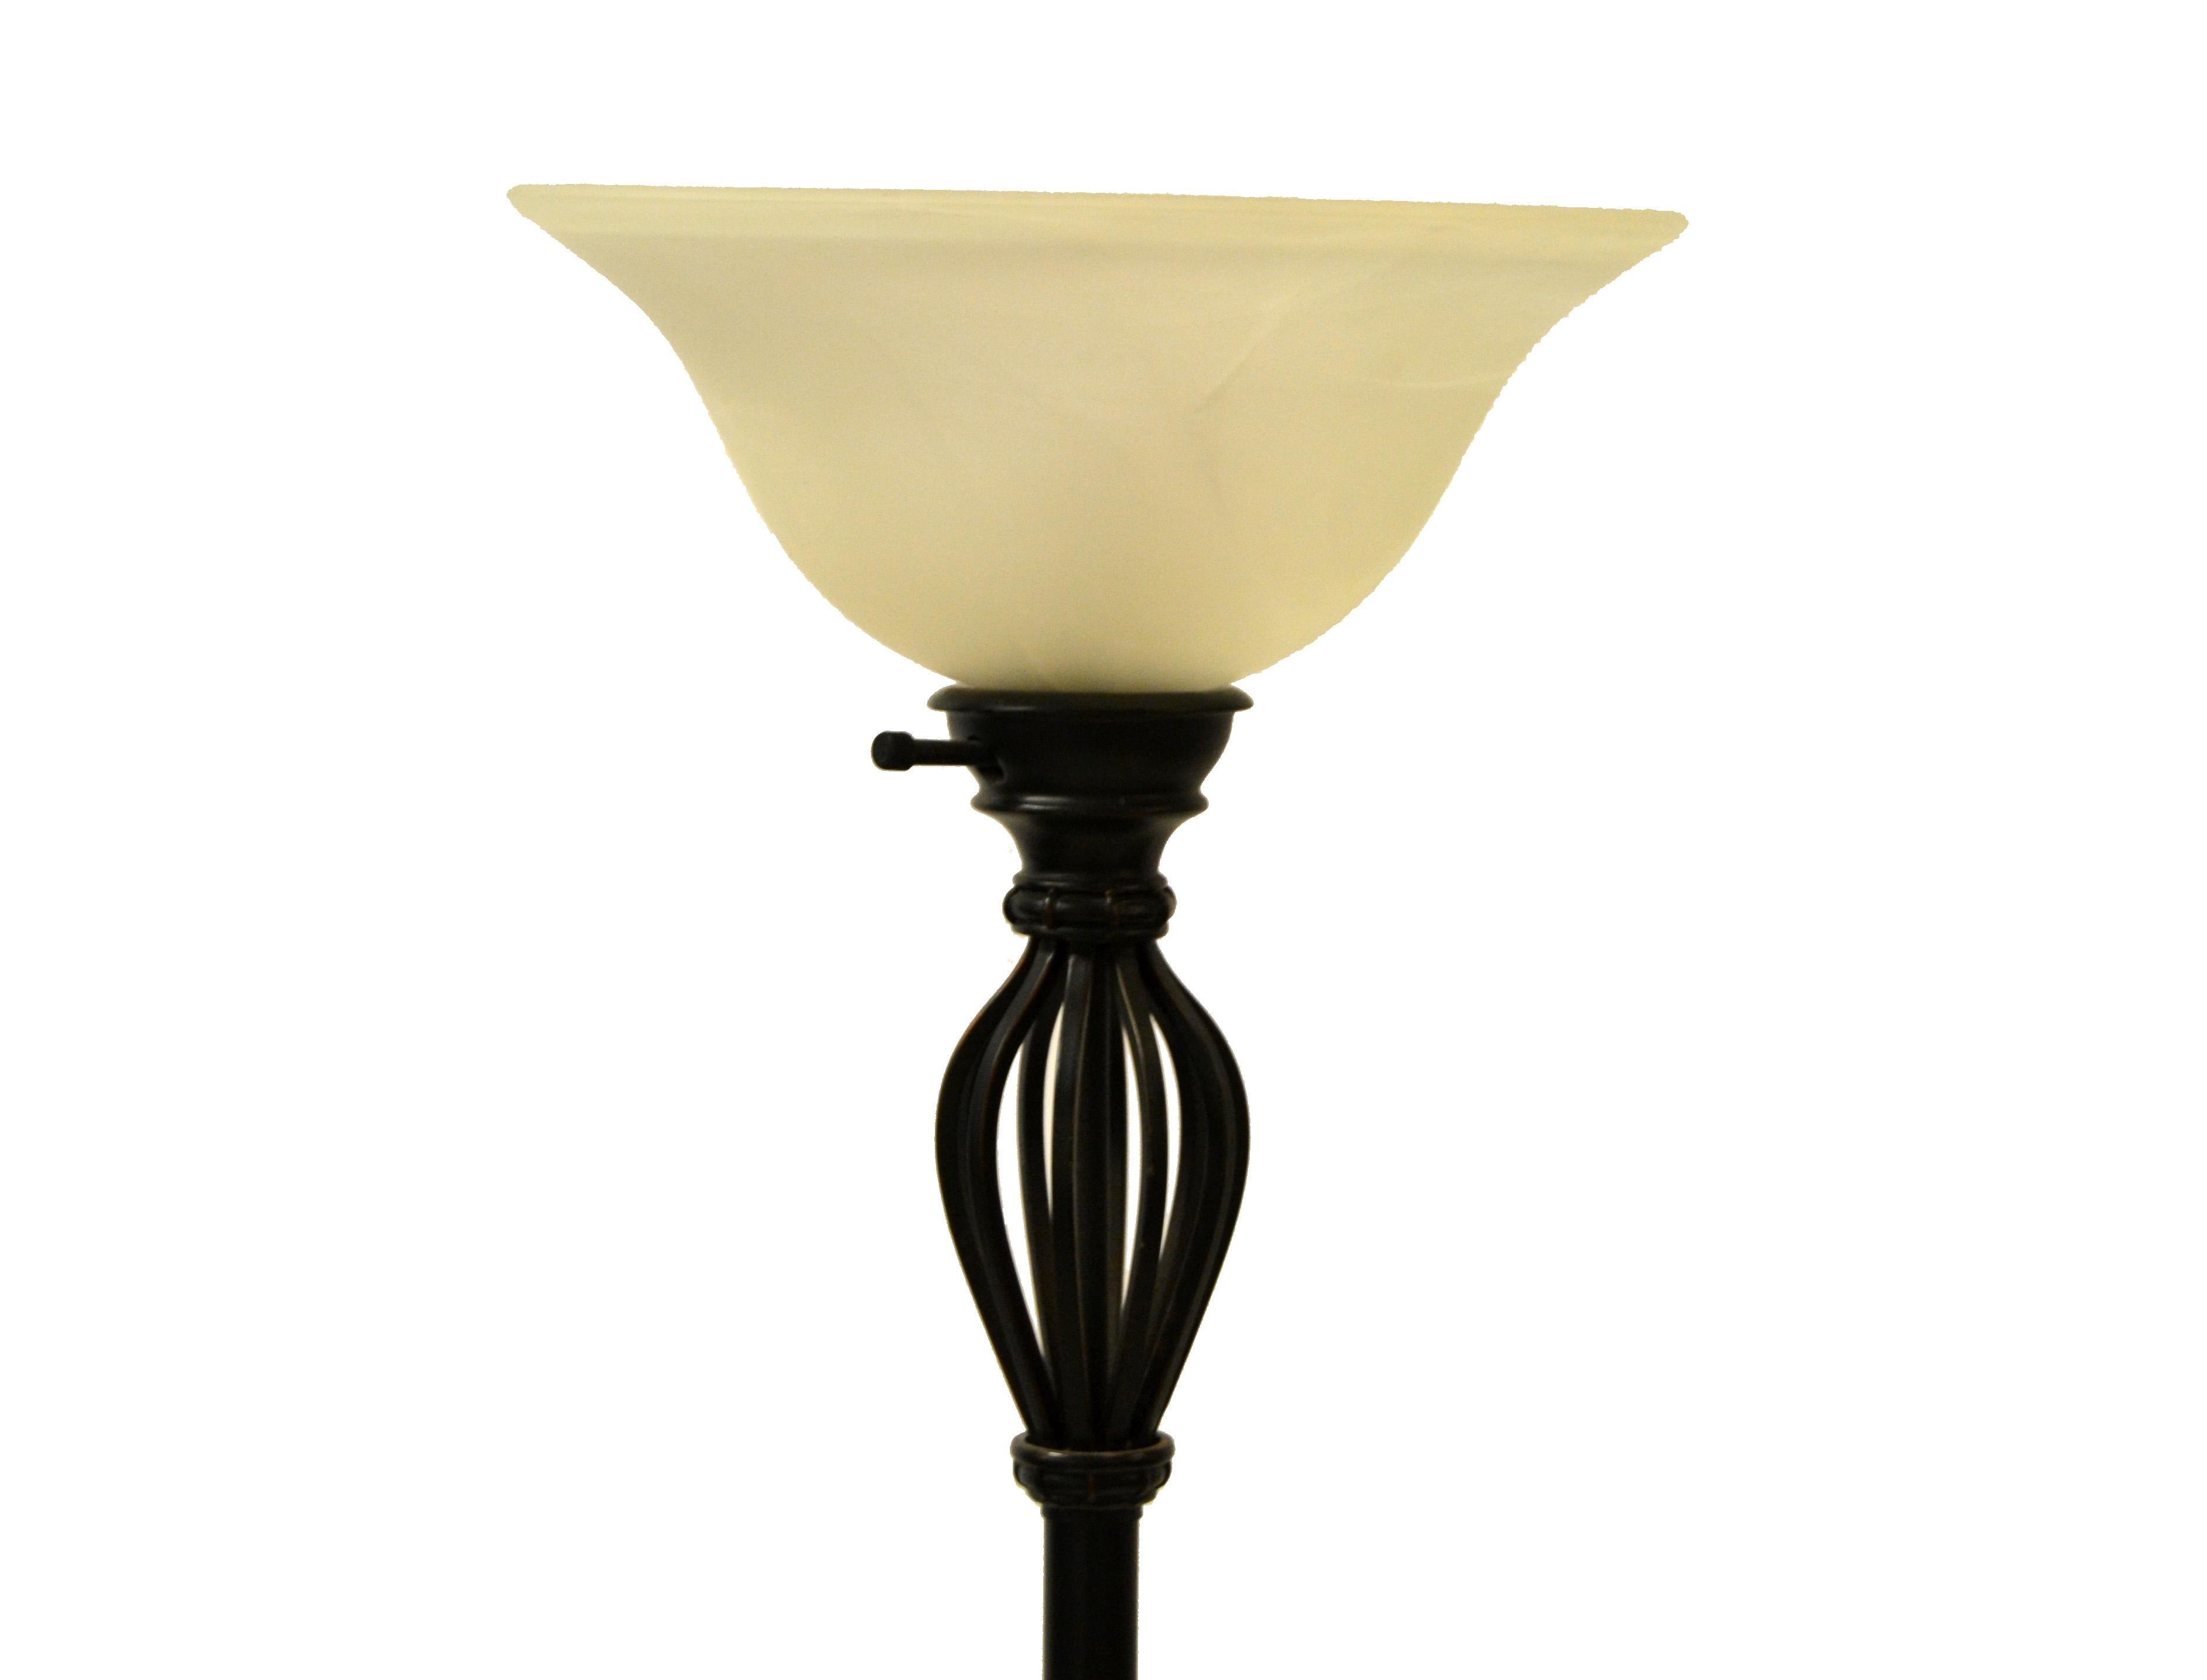 Hohe Stehlampe aus Murano-Glas und Schmiedeeisen in bronzefarbener Ausführung auf einem runden Sockel.
In einwandfreiem Zustand und verwendet eine Glühbirne mit maximal 75 Watt.
Wir verwenden LED-Lampen, um die Schönheit der mundgeblasenen